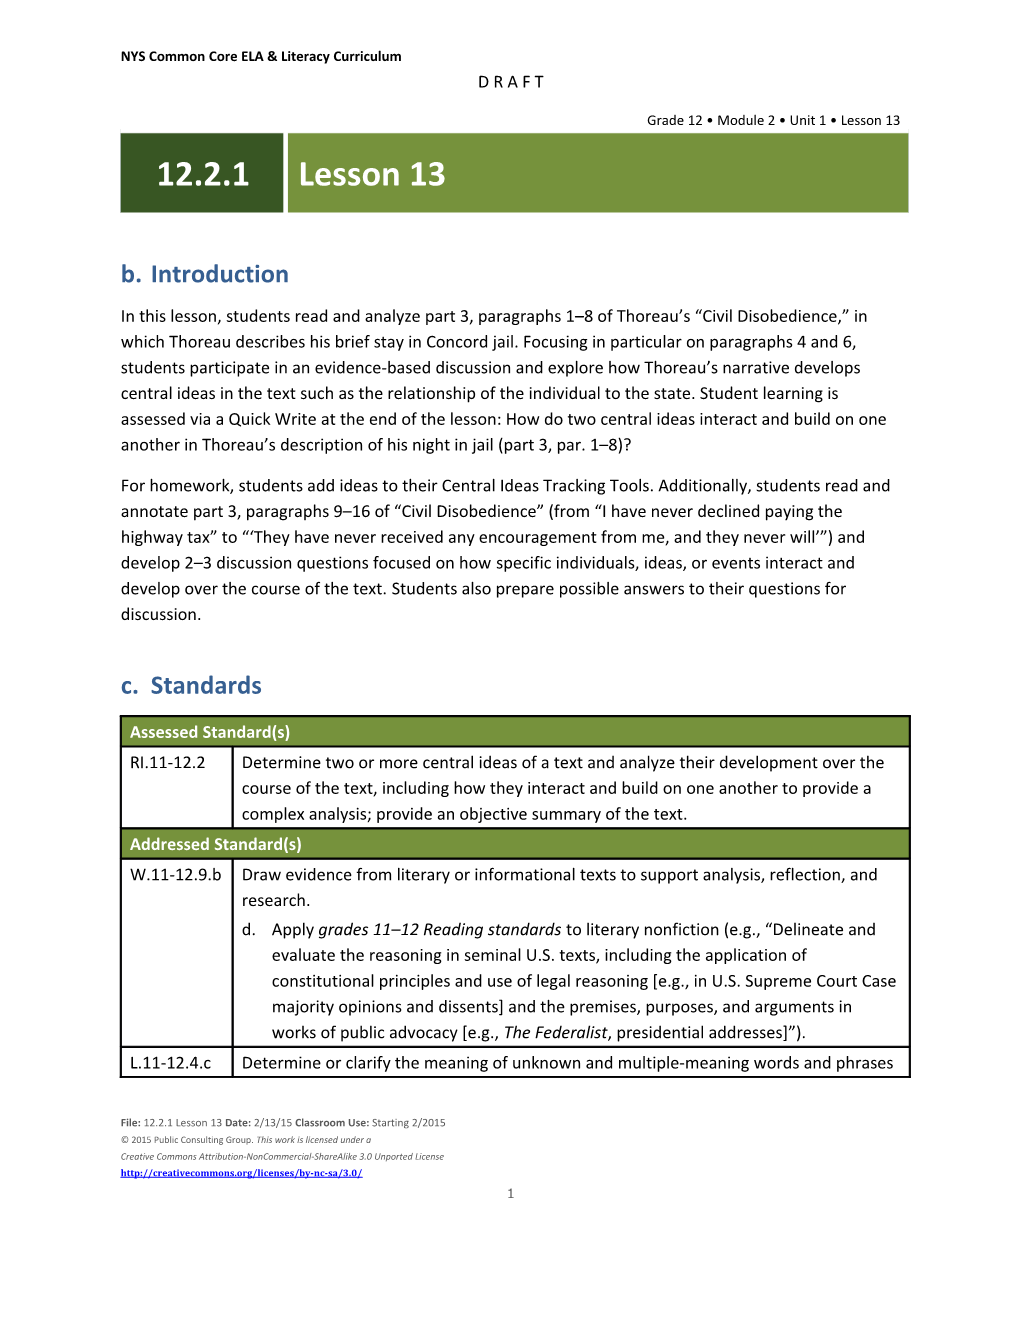 Lesson Agenda/Overview s1